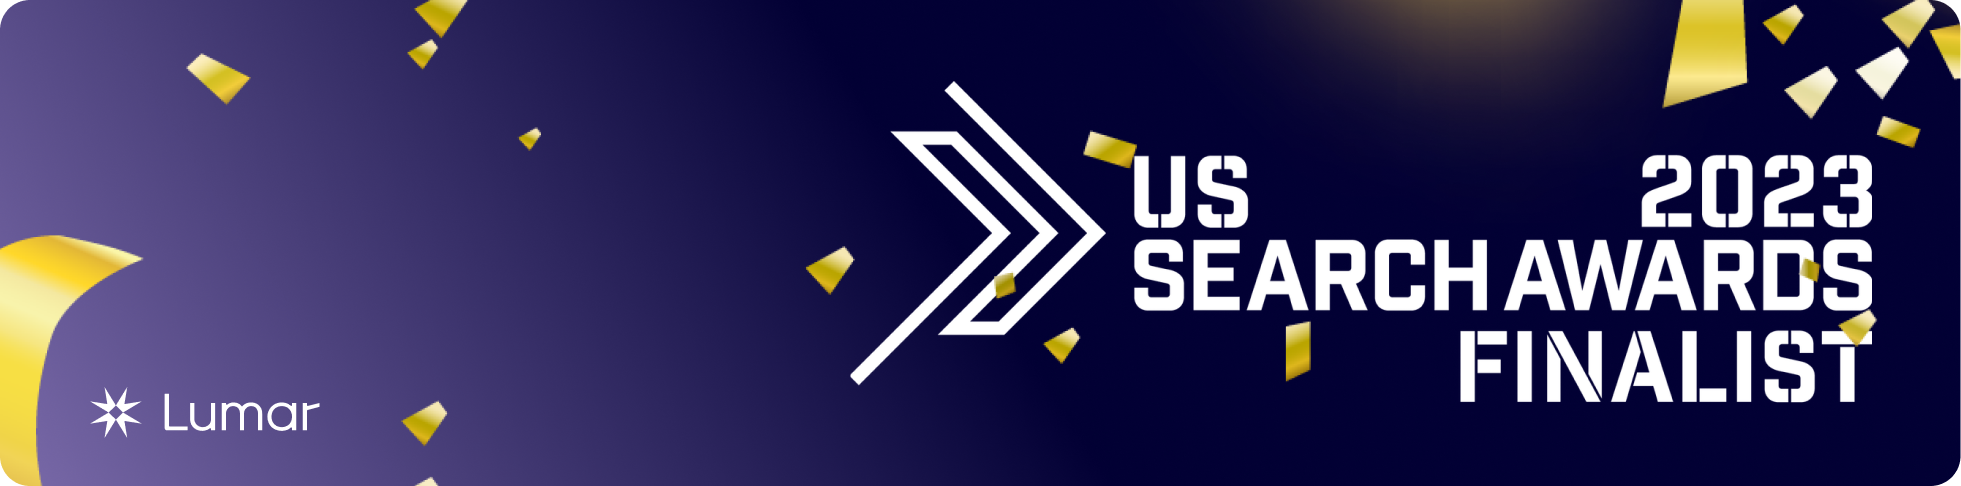 US Search Awards Finalist 2023 - Lumar Website Intelligence